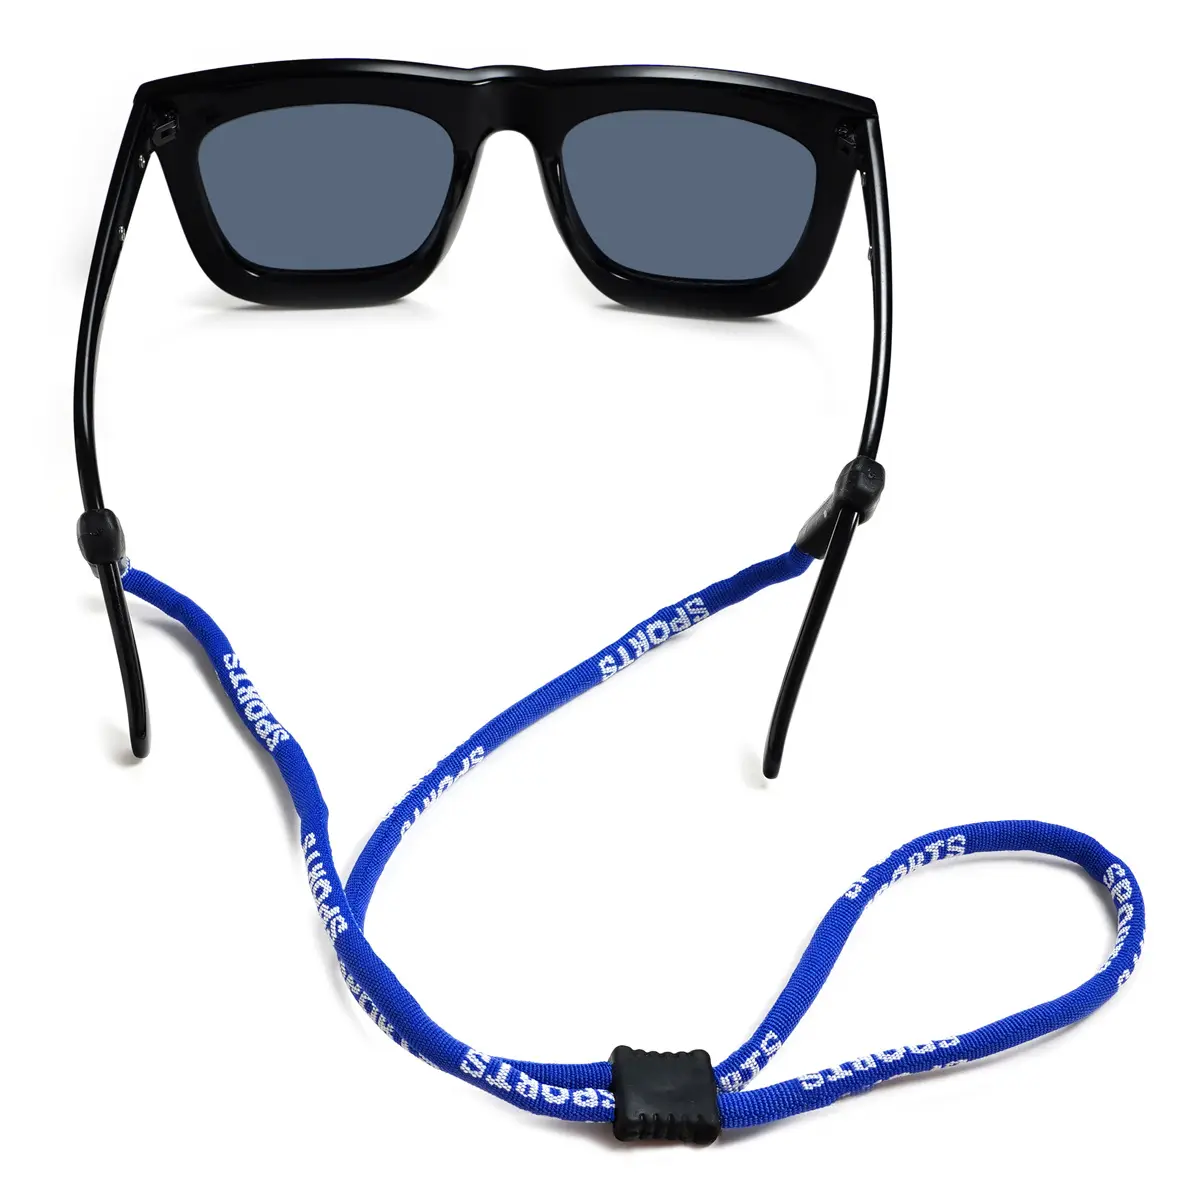 YTSDG001 디자인 안경 체인 여성 선글라스 로프 안경 코드 끈 스포츠 안경 체인 스트랩